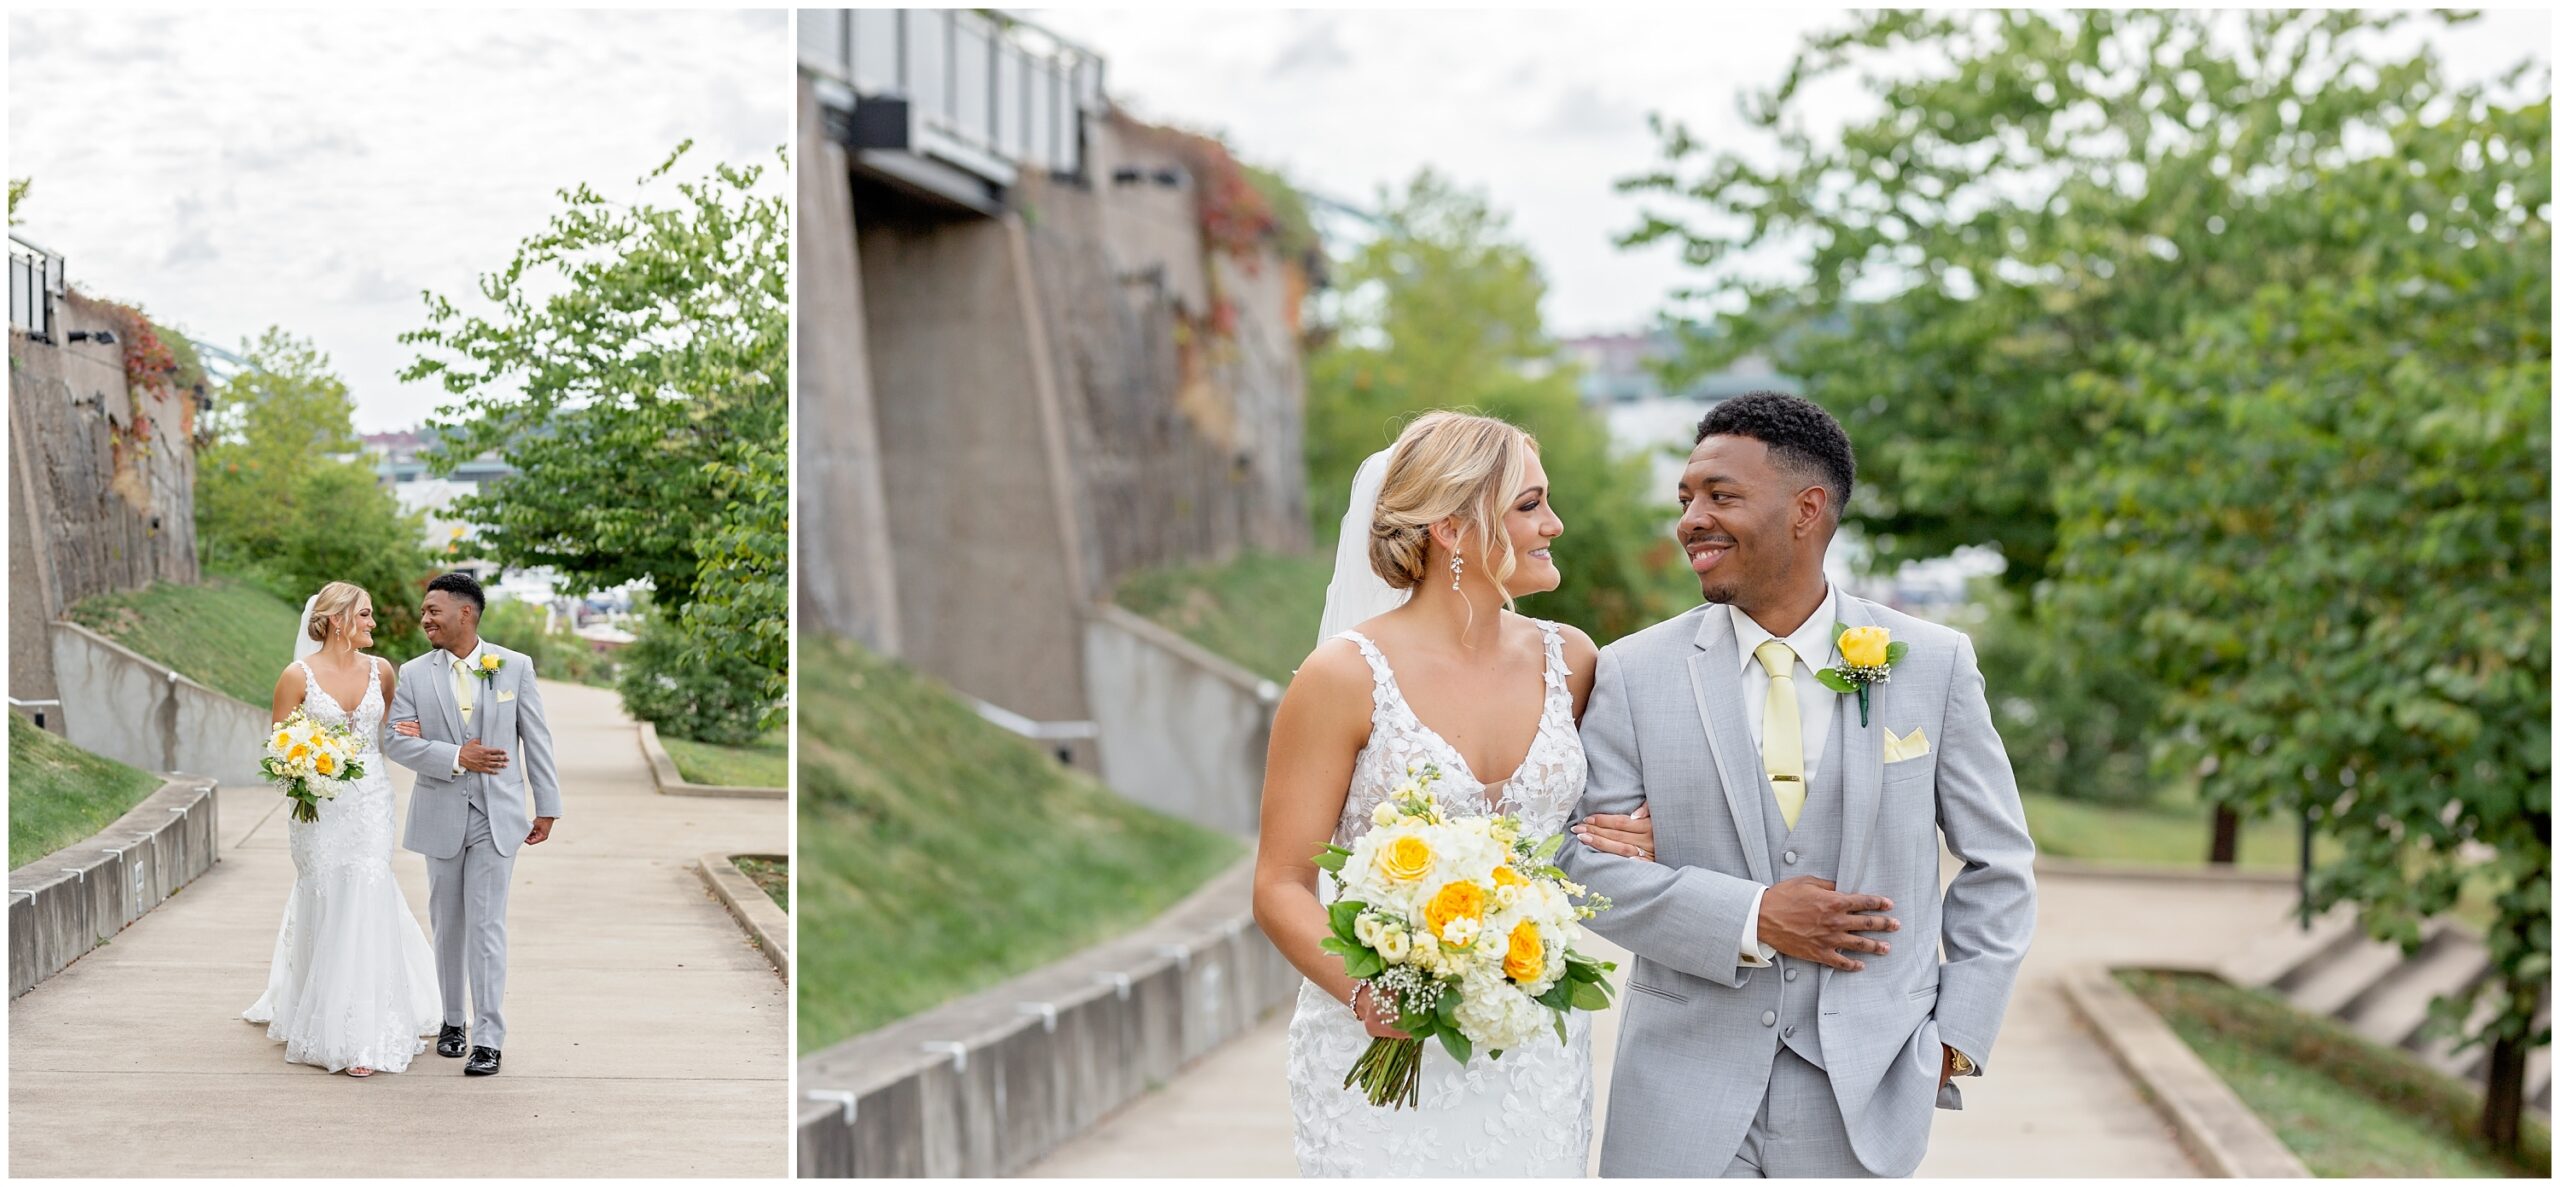 Hyatt House Southside Wedding in Pittsburgh PA Photographed by Pittsburgh Wedding Photographer Acevedo Weddings